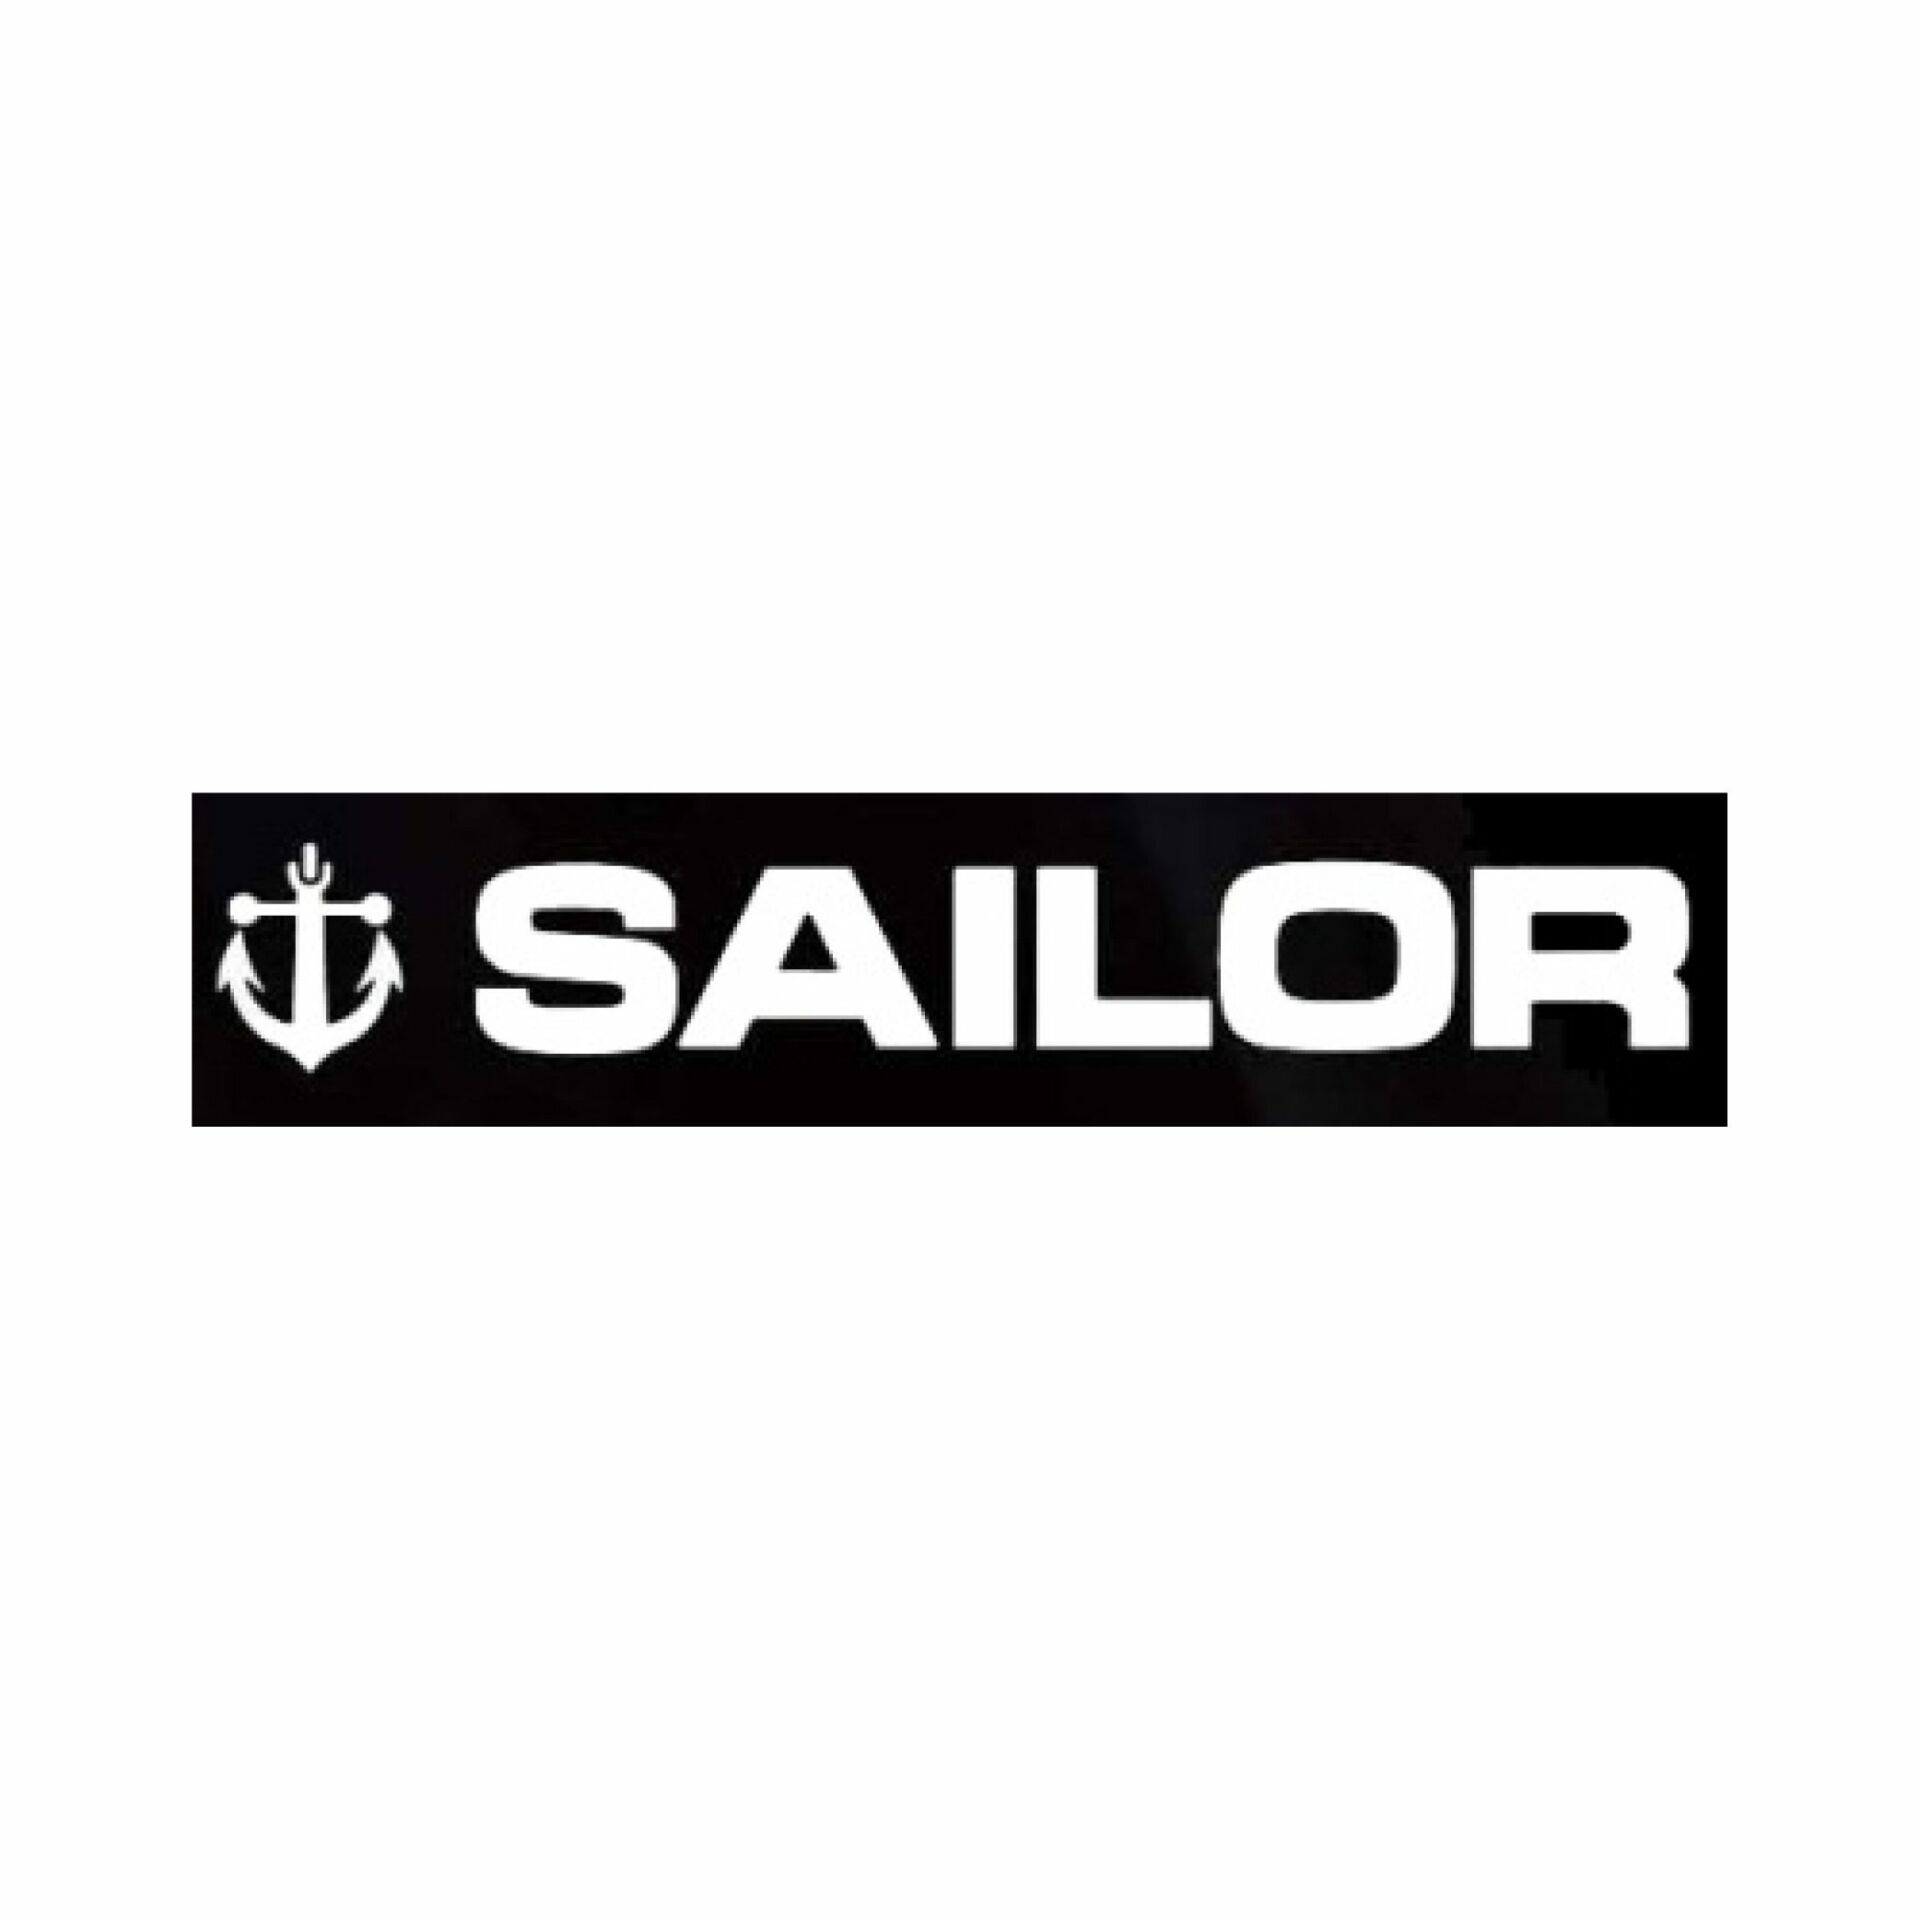 Sailor vulpen